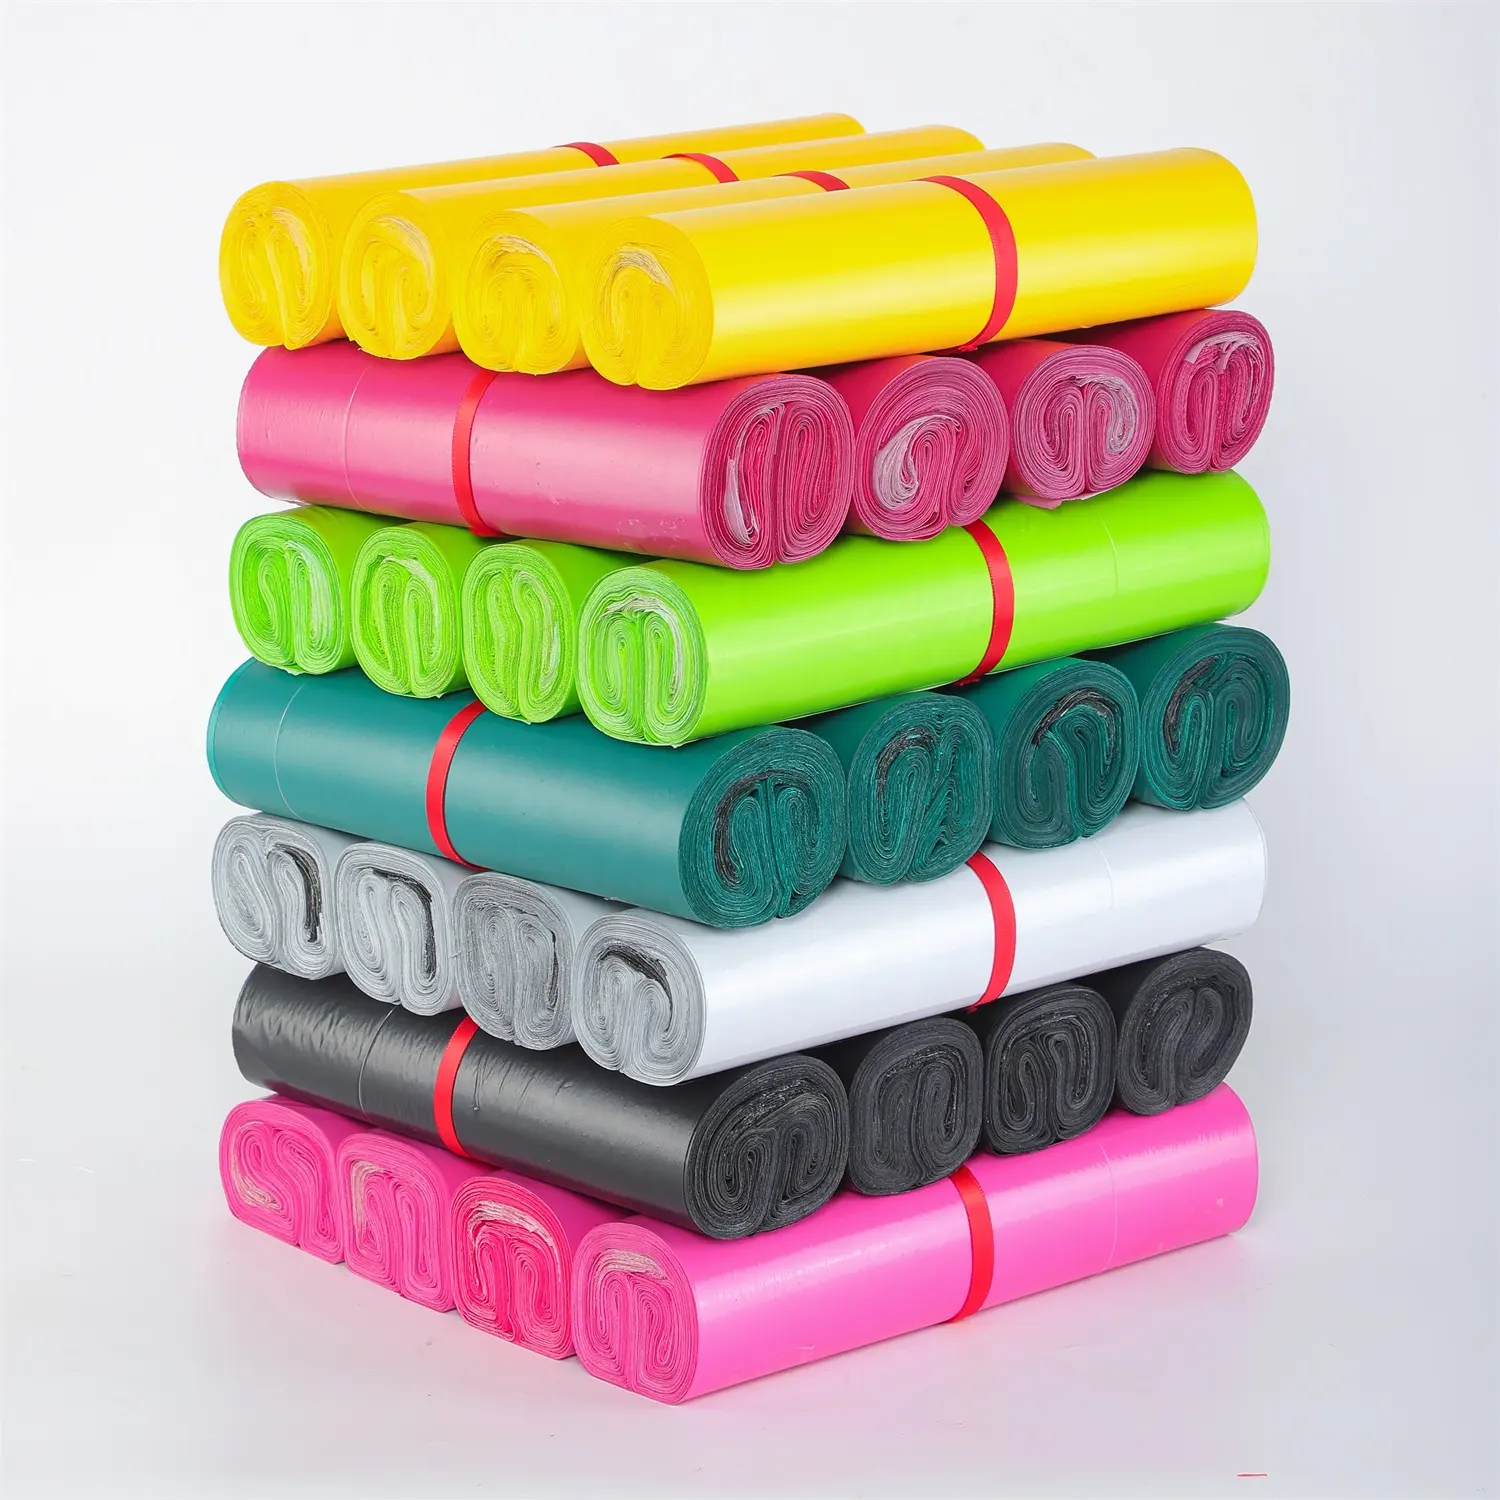 ポリエチレンキャリアおもちゃパッキングシールソックスシャツ包装材料ロールにロゴプラスチック付きの衣類を梱包するための小さなビニール袋